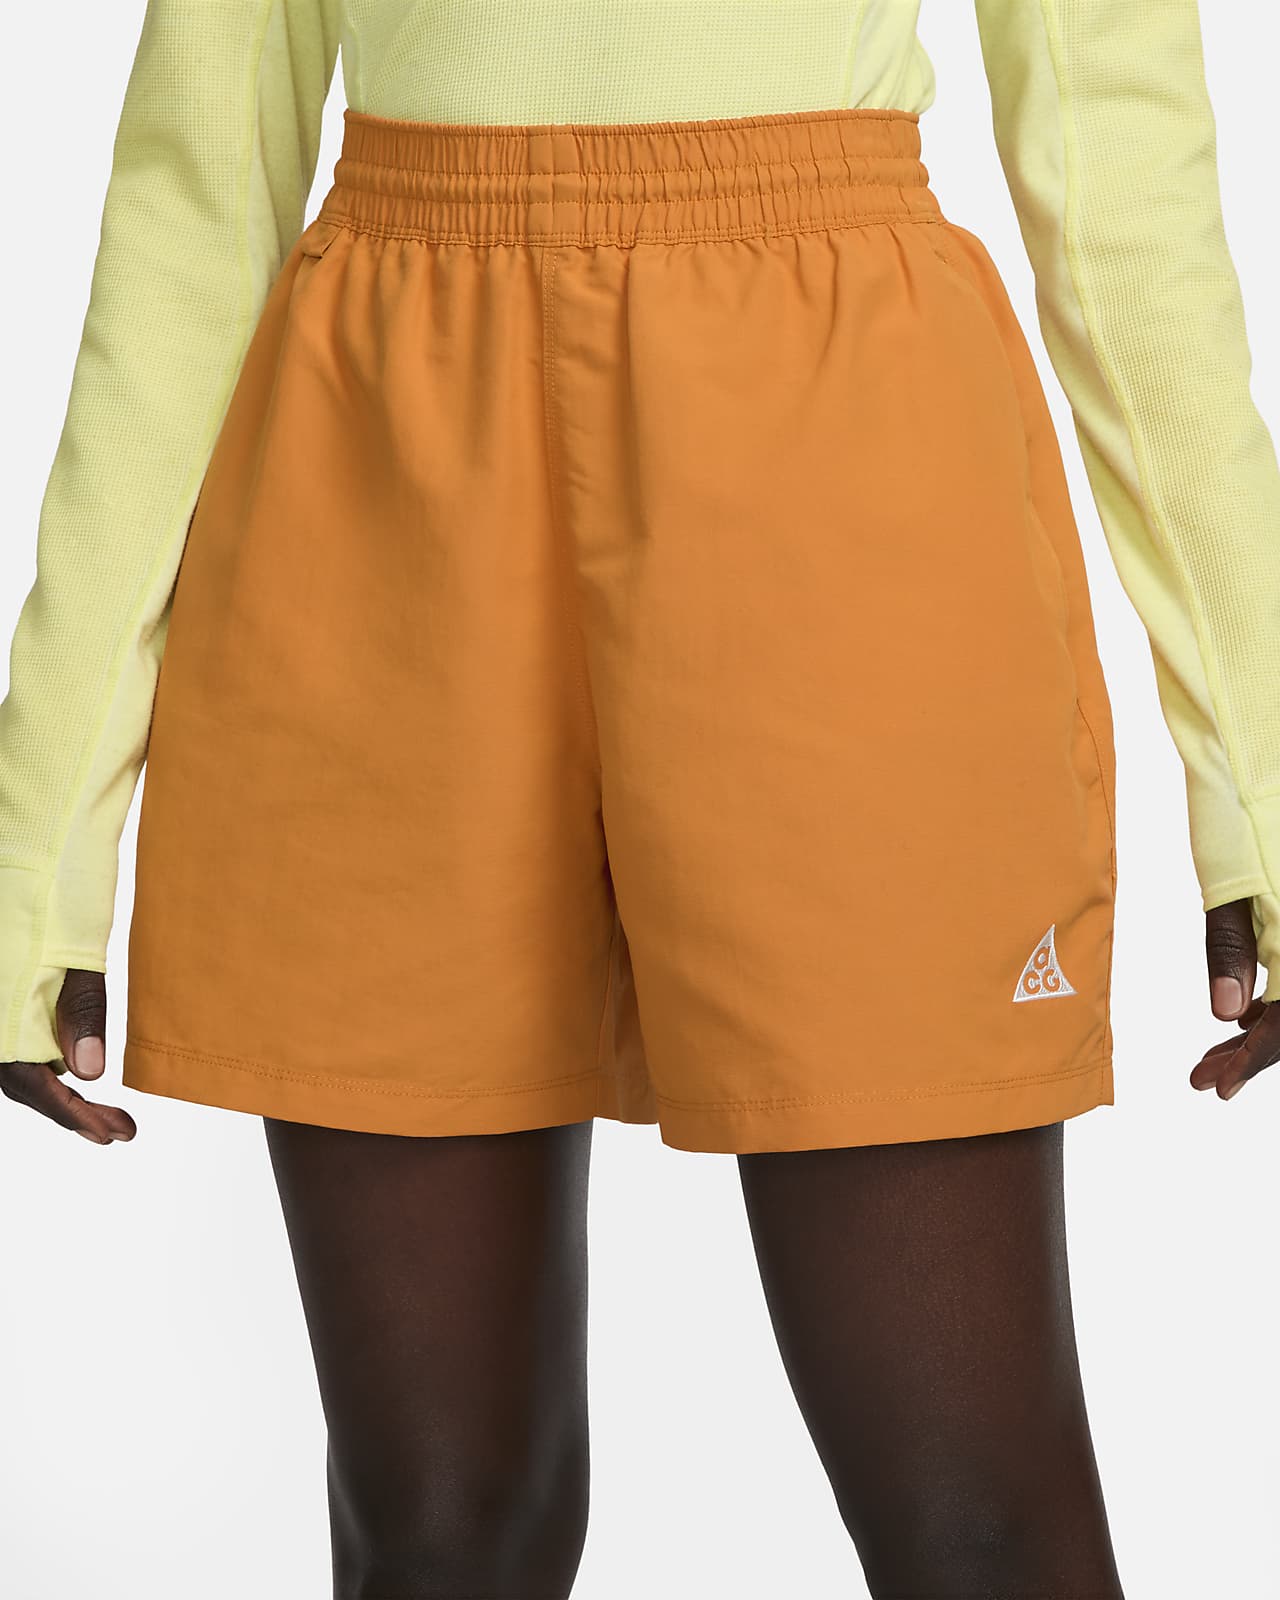 Nike ACG Women's 12.5cm (approx.) Shorts. Nike CA